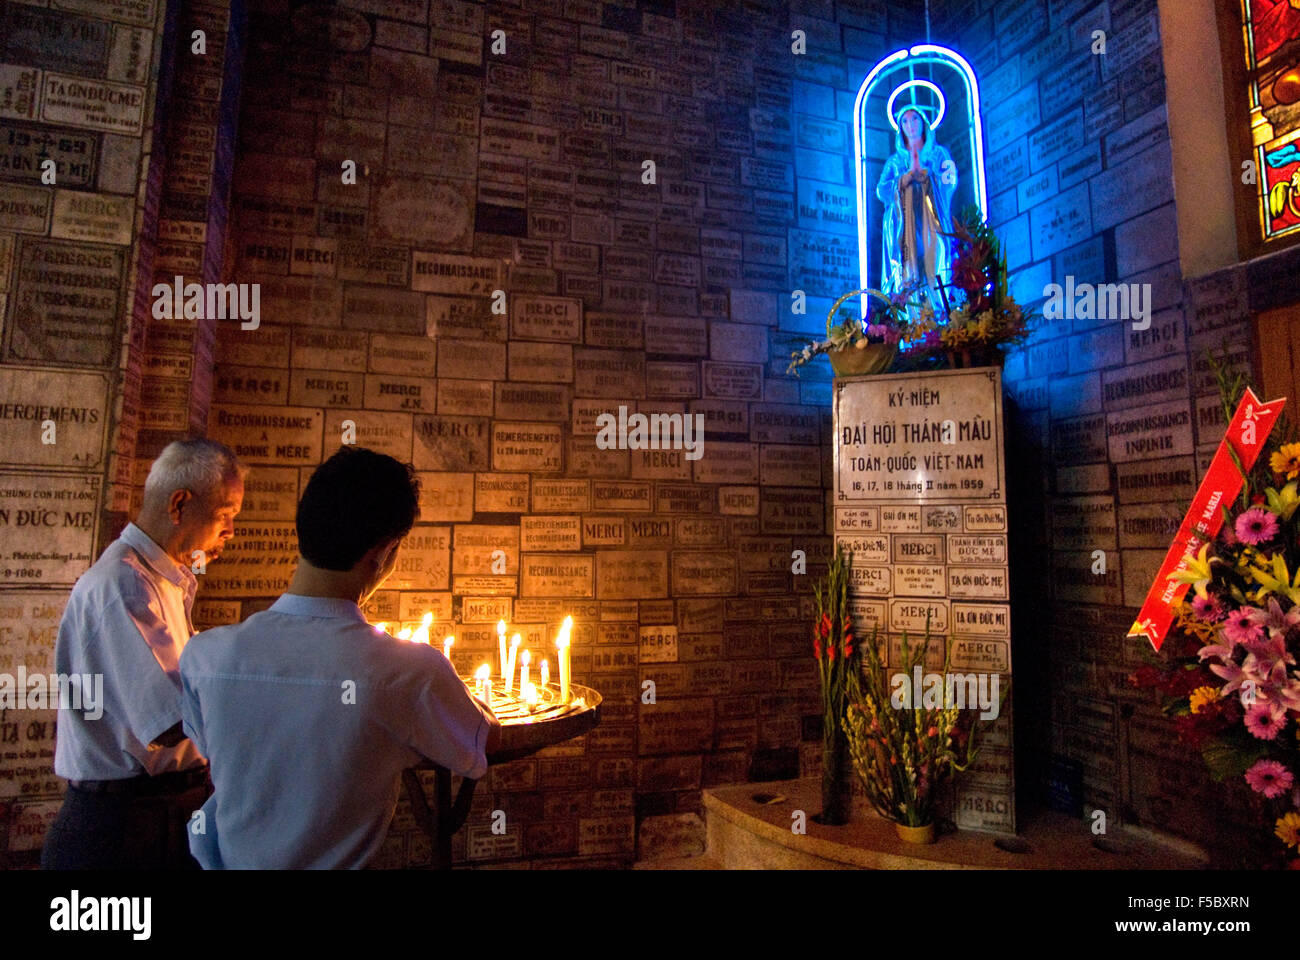 All'interno della cattedrale di Notre Dame, la città di Ho Chi Minh (Saigon), Vietnam, Indocina, sud-est asiatico. La gente nella cattedrale di Notre Dame ho Foto Stock